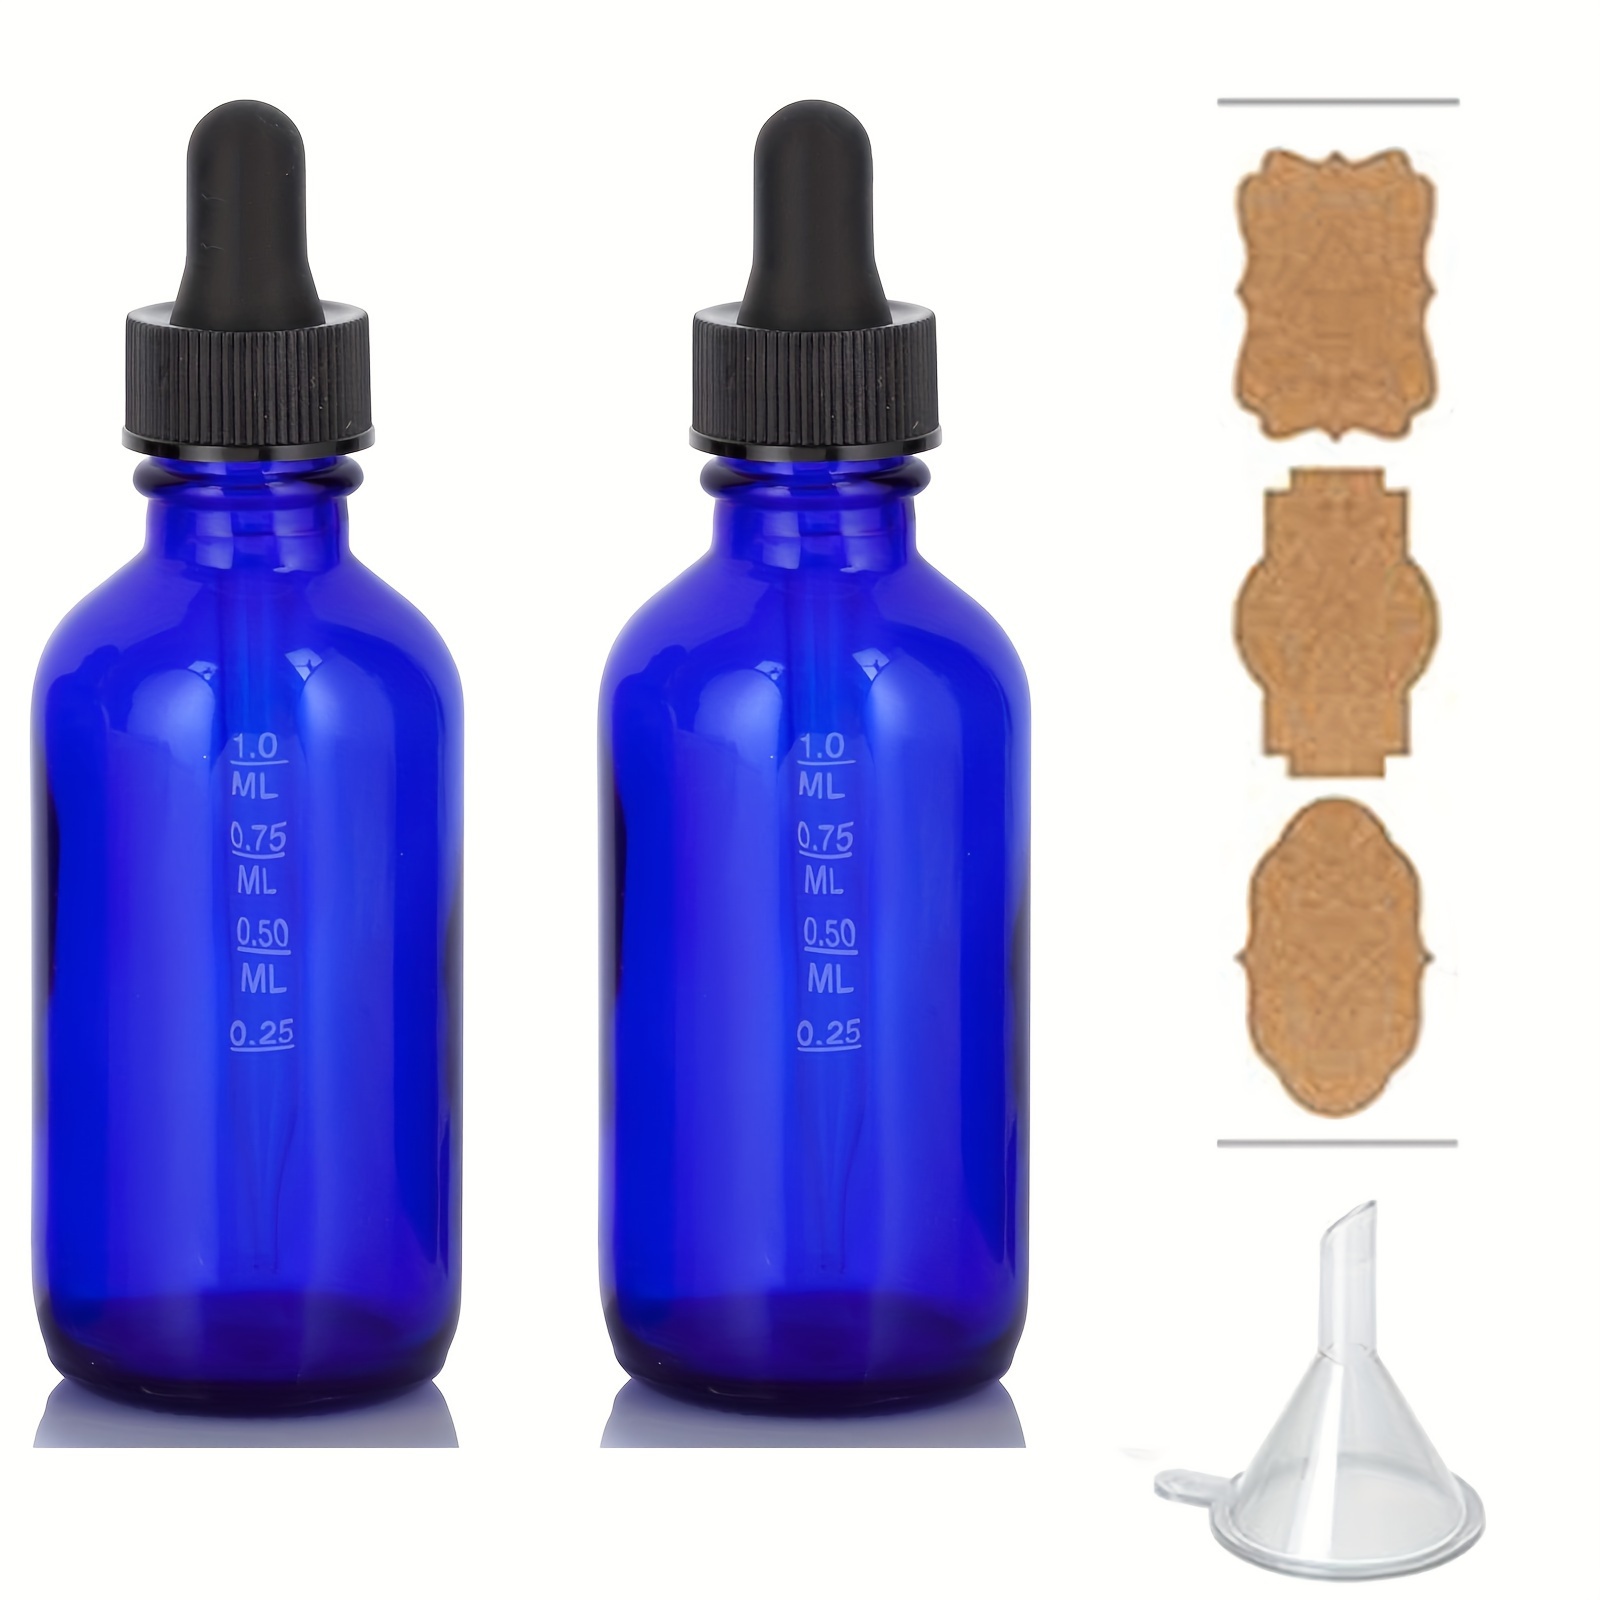 Cobalt Blue vs Amber Bottles - Which Has Better UV Protection